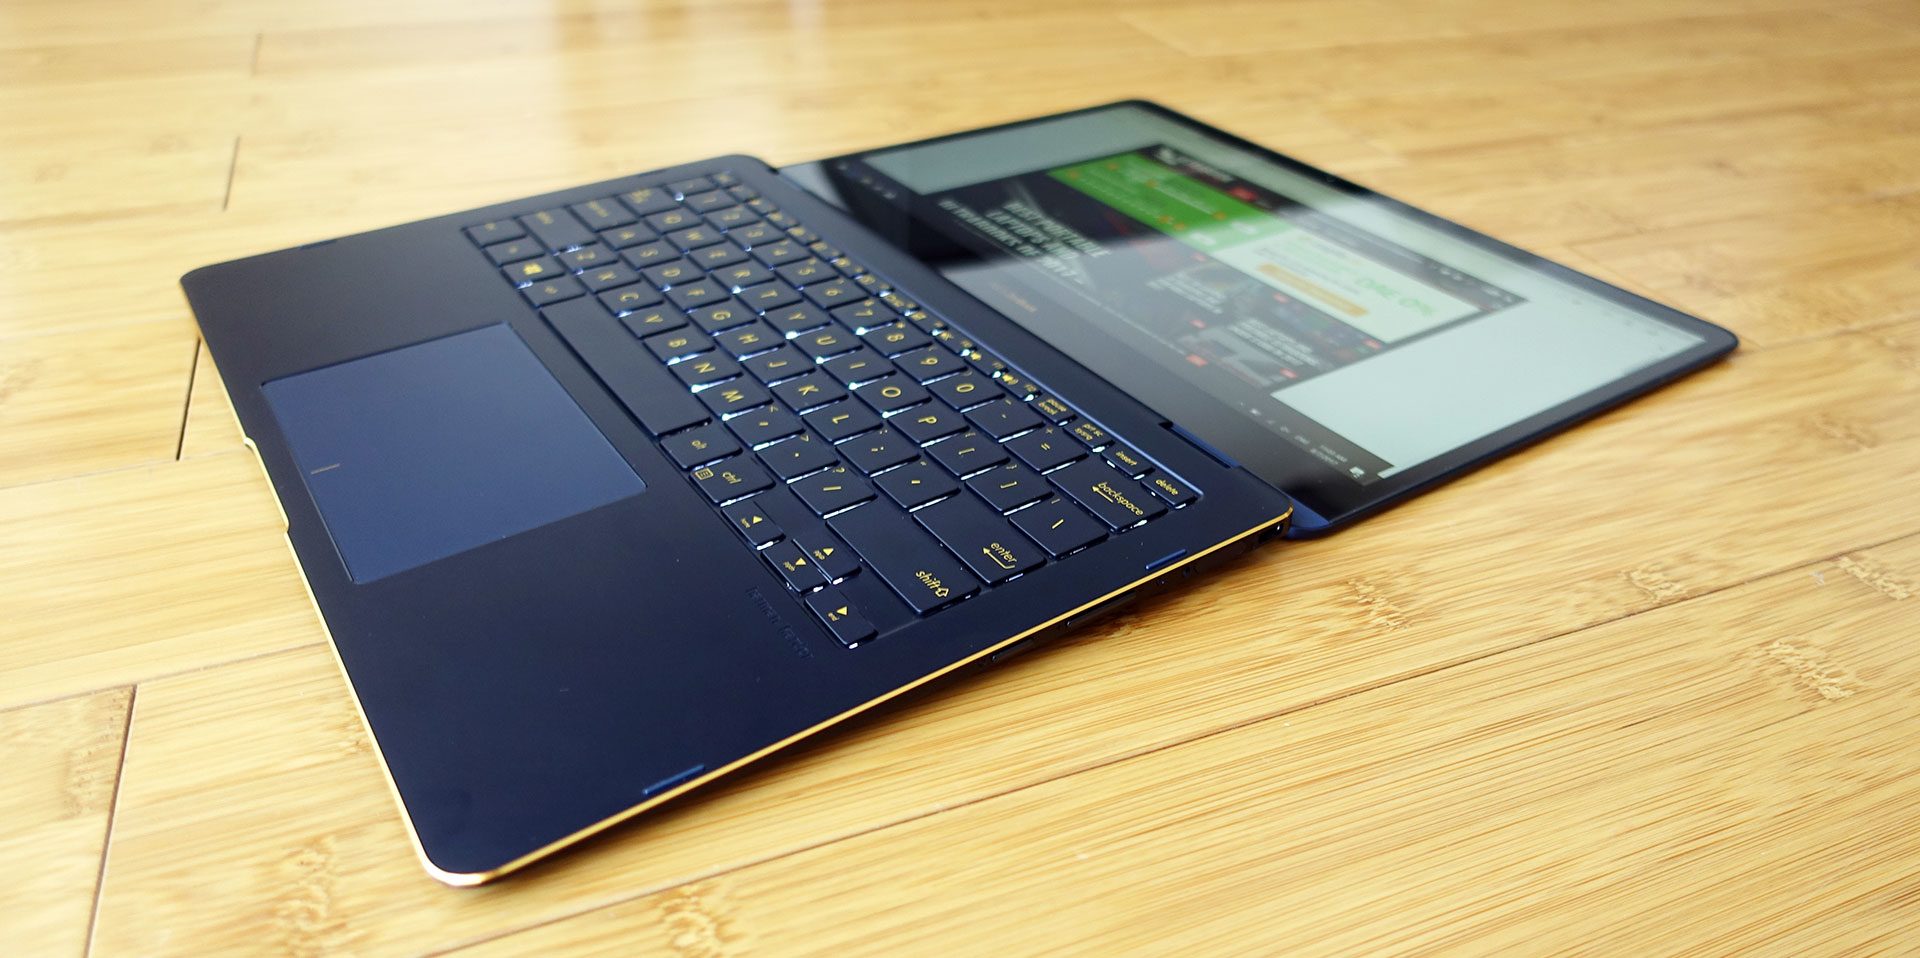 Asus ZenBook Flip S UX370UA review - the vanity 2-in-1 laptop